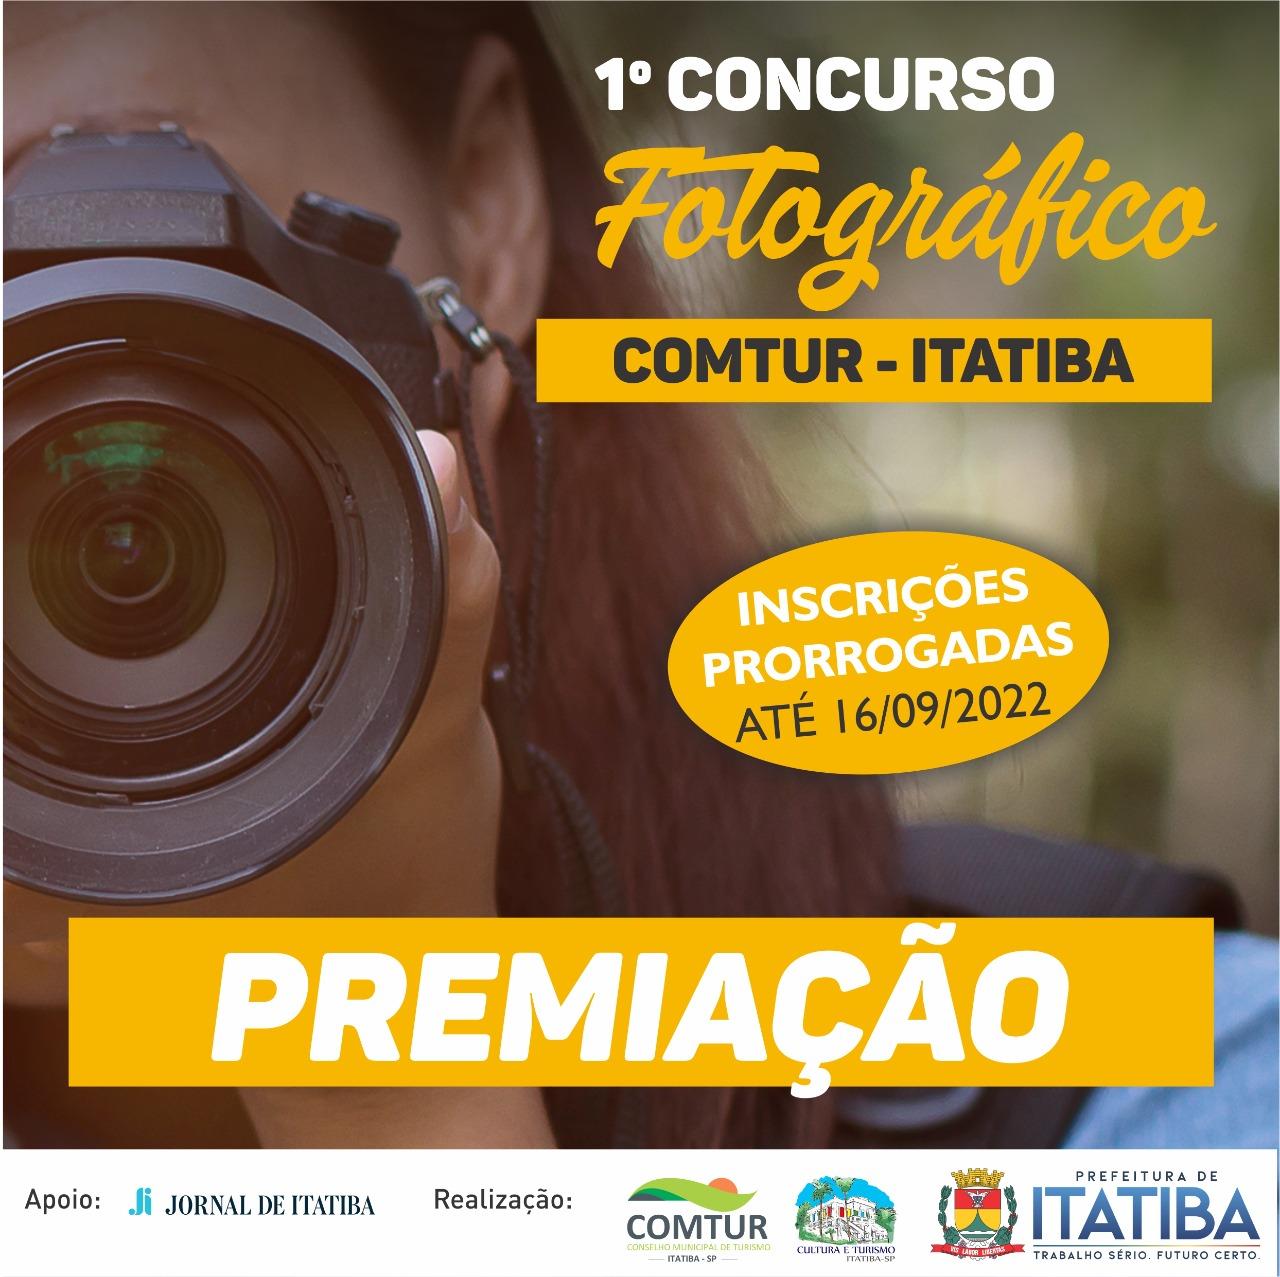 Inscrições para Concurso Fotográfico Comtur-Itatiba terminam amanhã